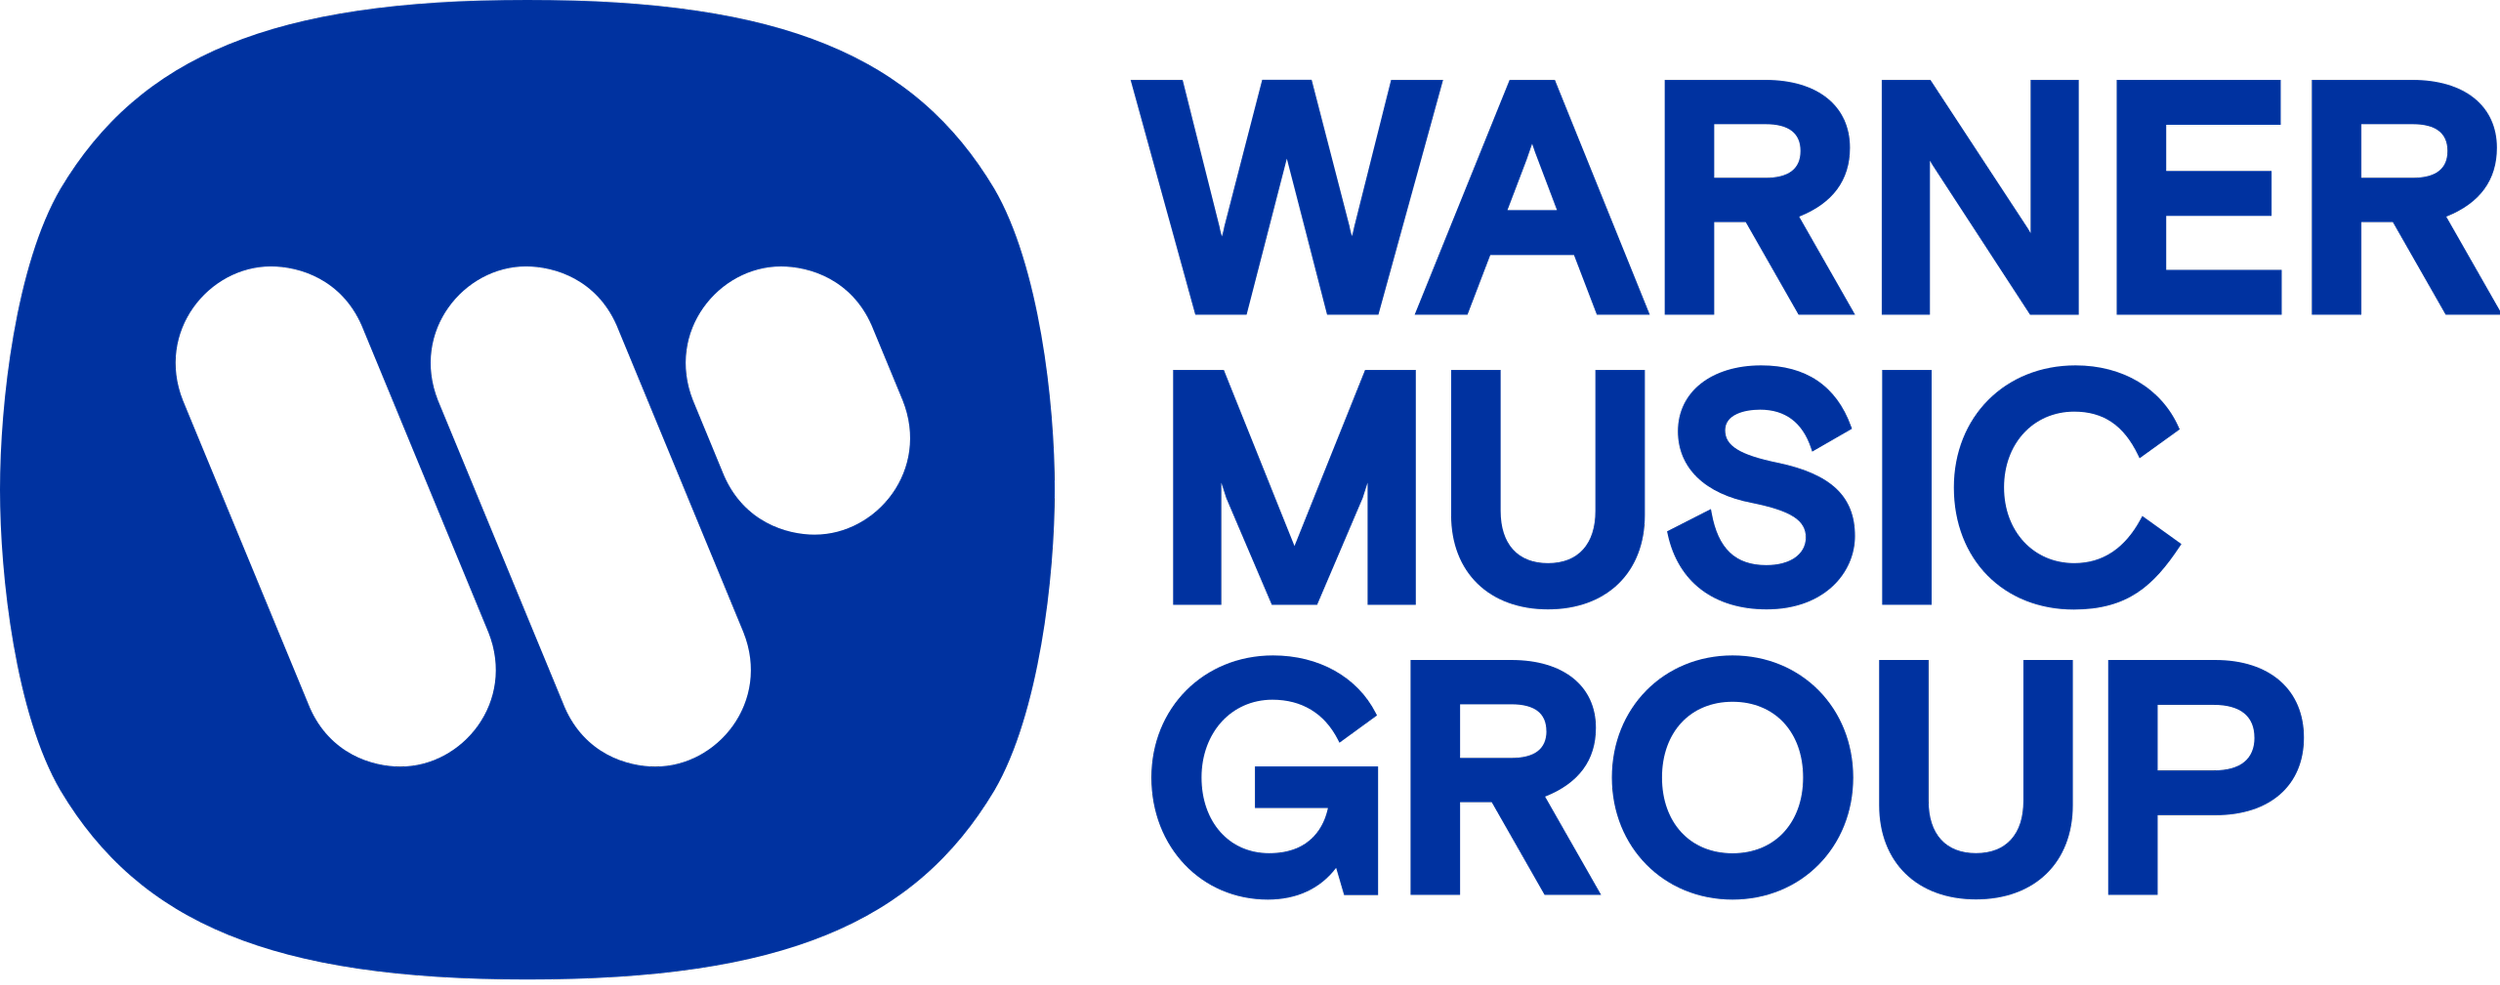 Warner_Music_Group_logo_(2021).svg.png